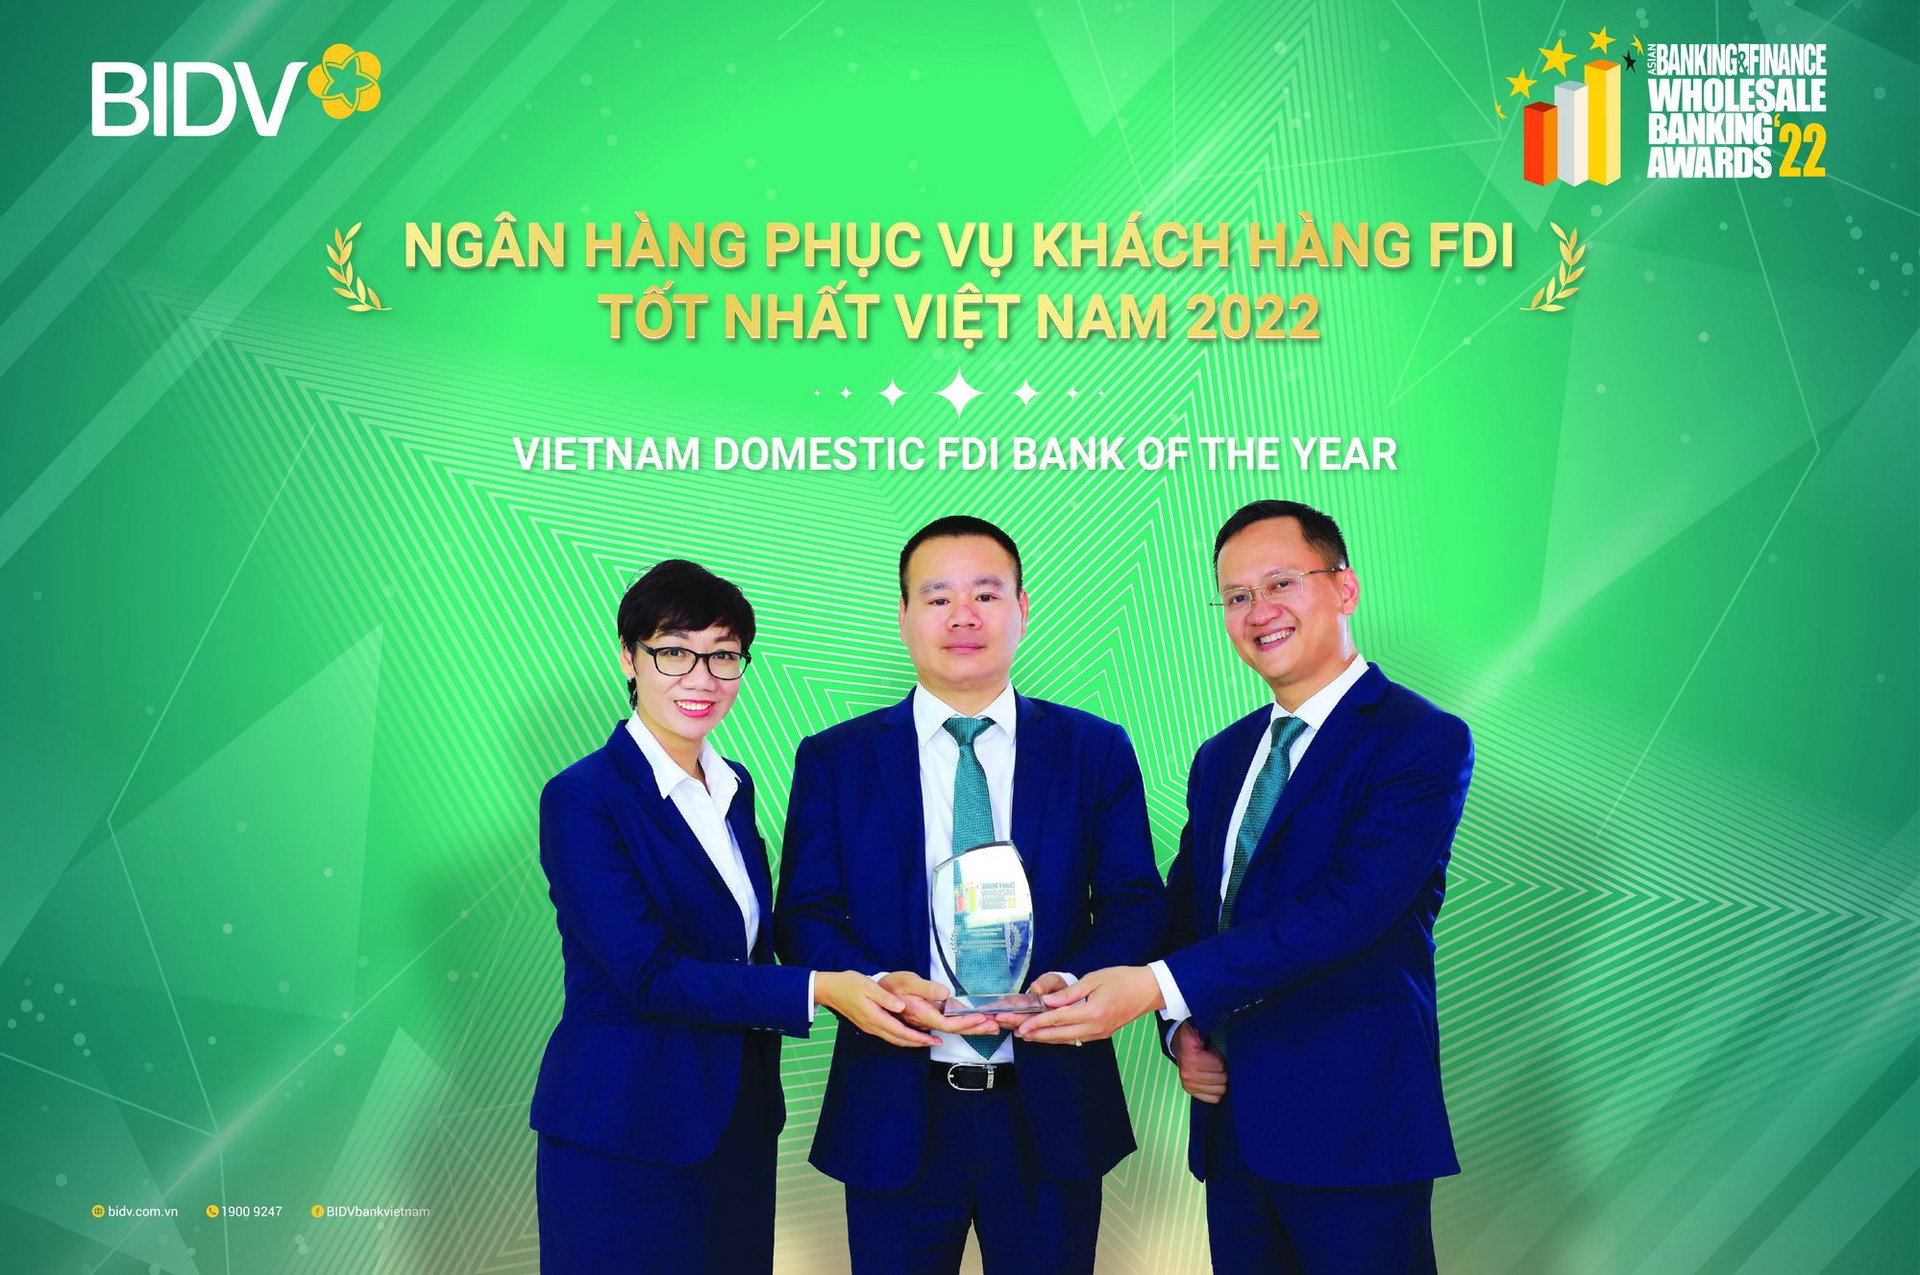 Asian Banking & Finance: BIDV là “Ngân hàng phục vụ khách hàng FDI tốt nhất Việt Nam năm 2022”